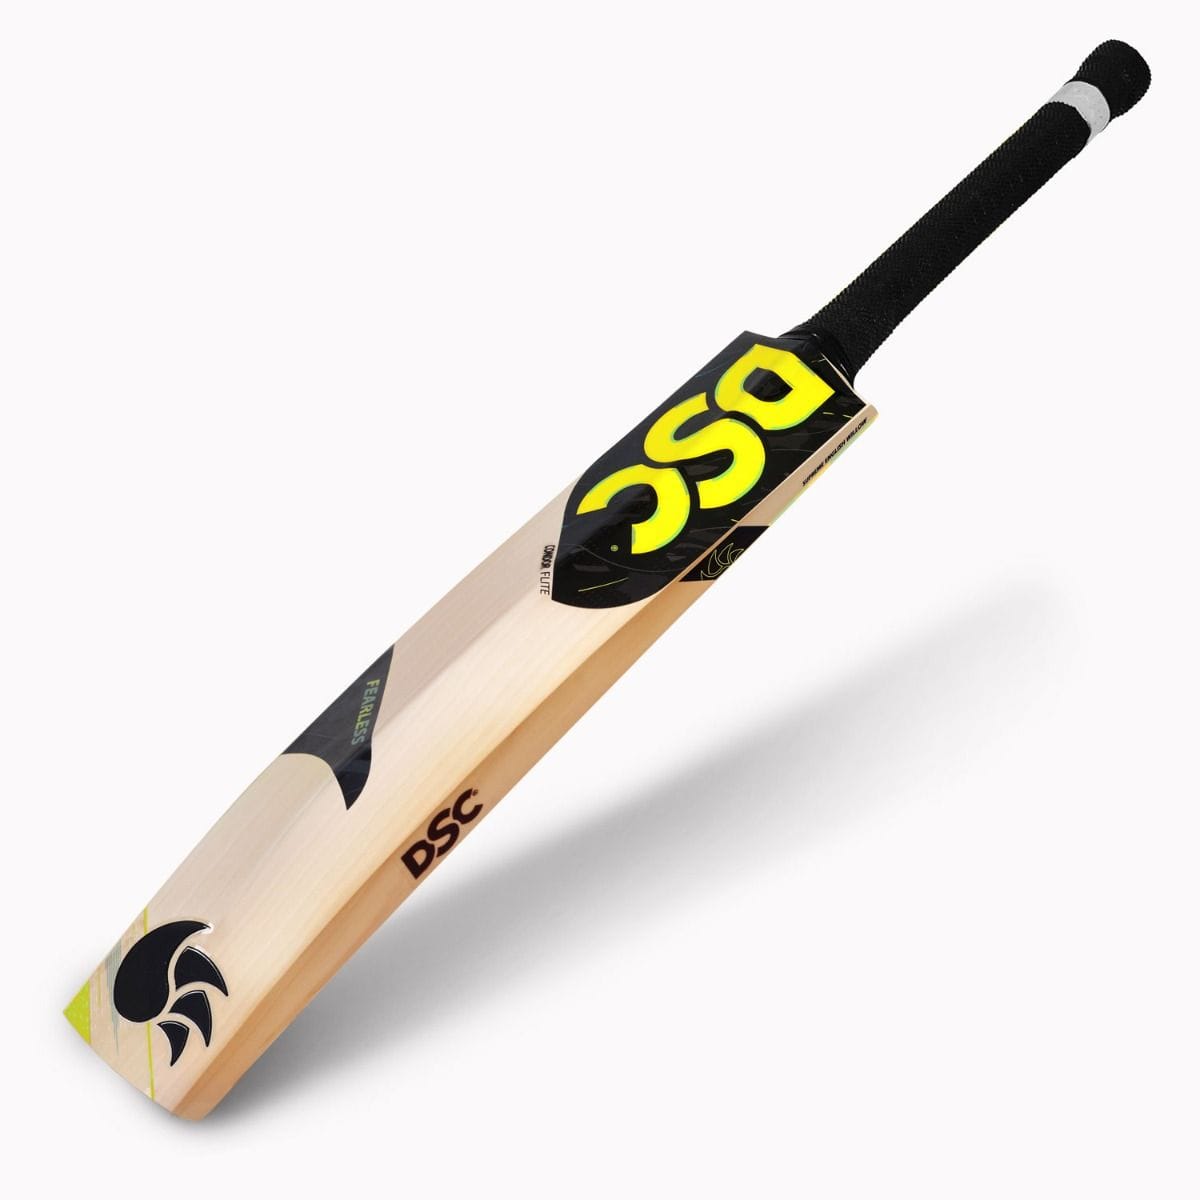 WSC Cricket Bats Harrow DSC Condor Flite Junior Cricket Bat